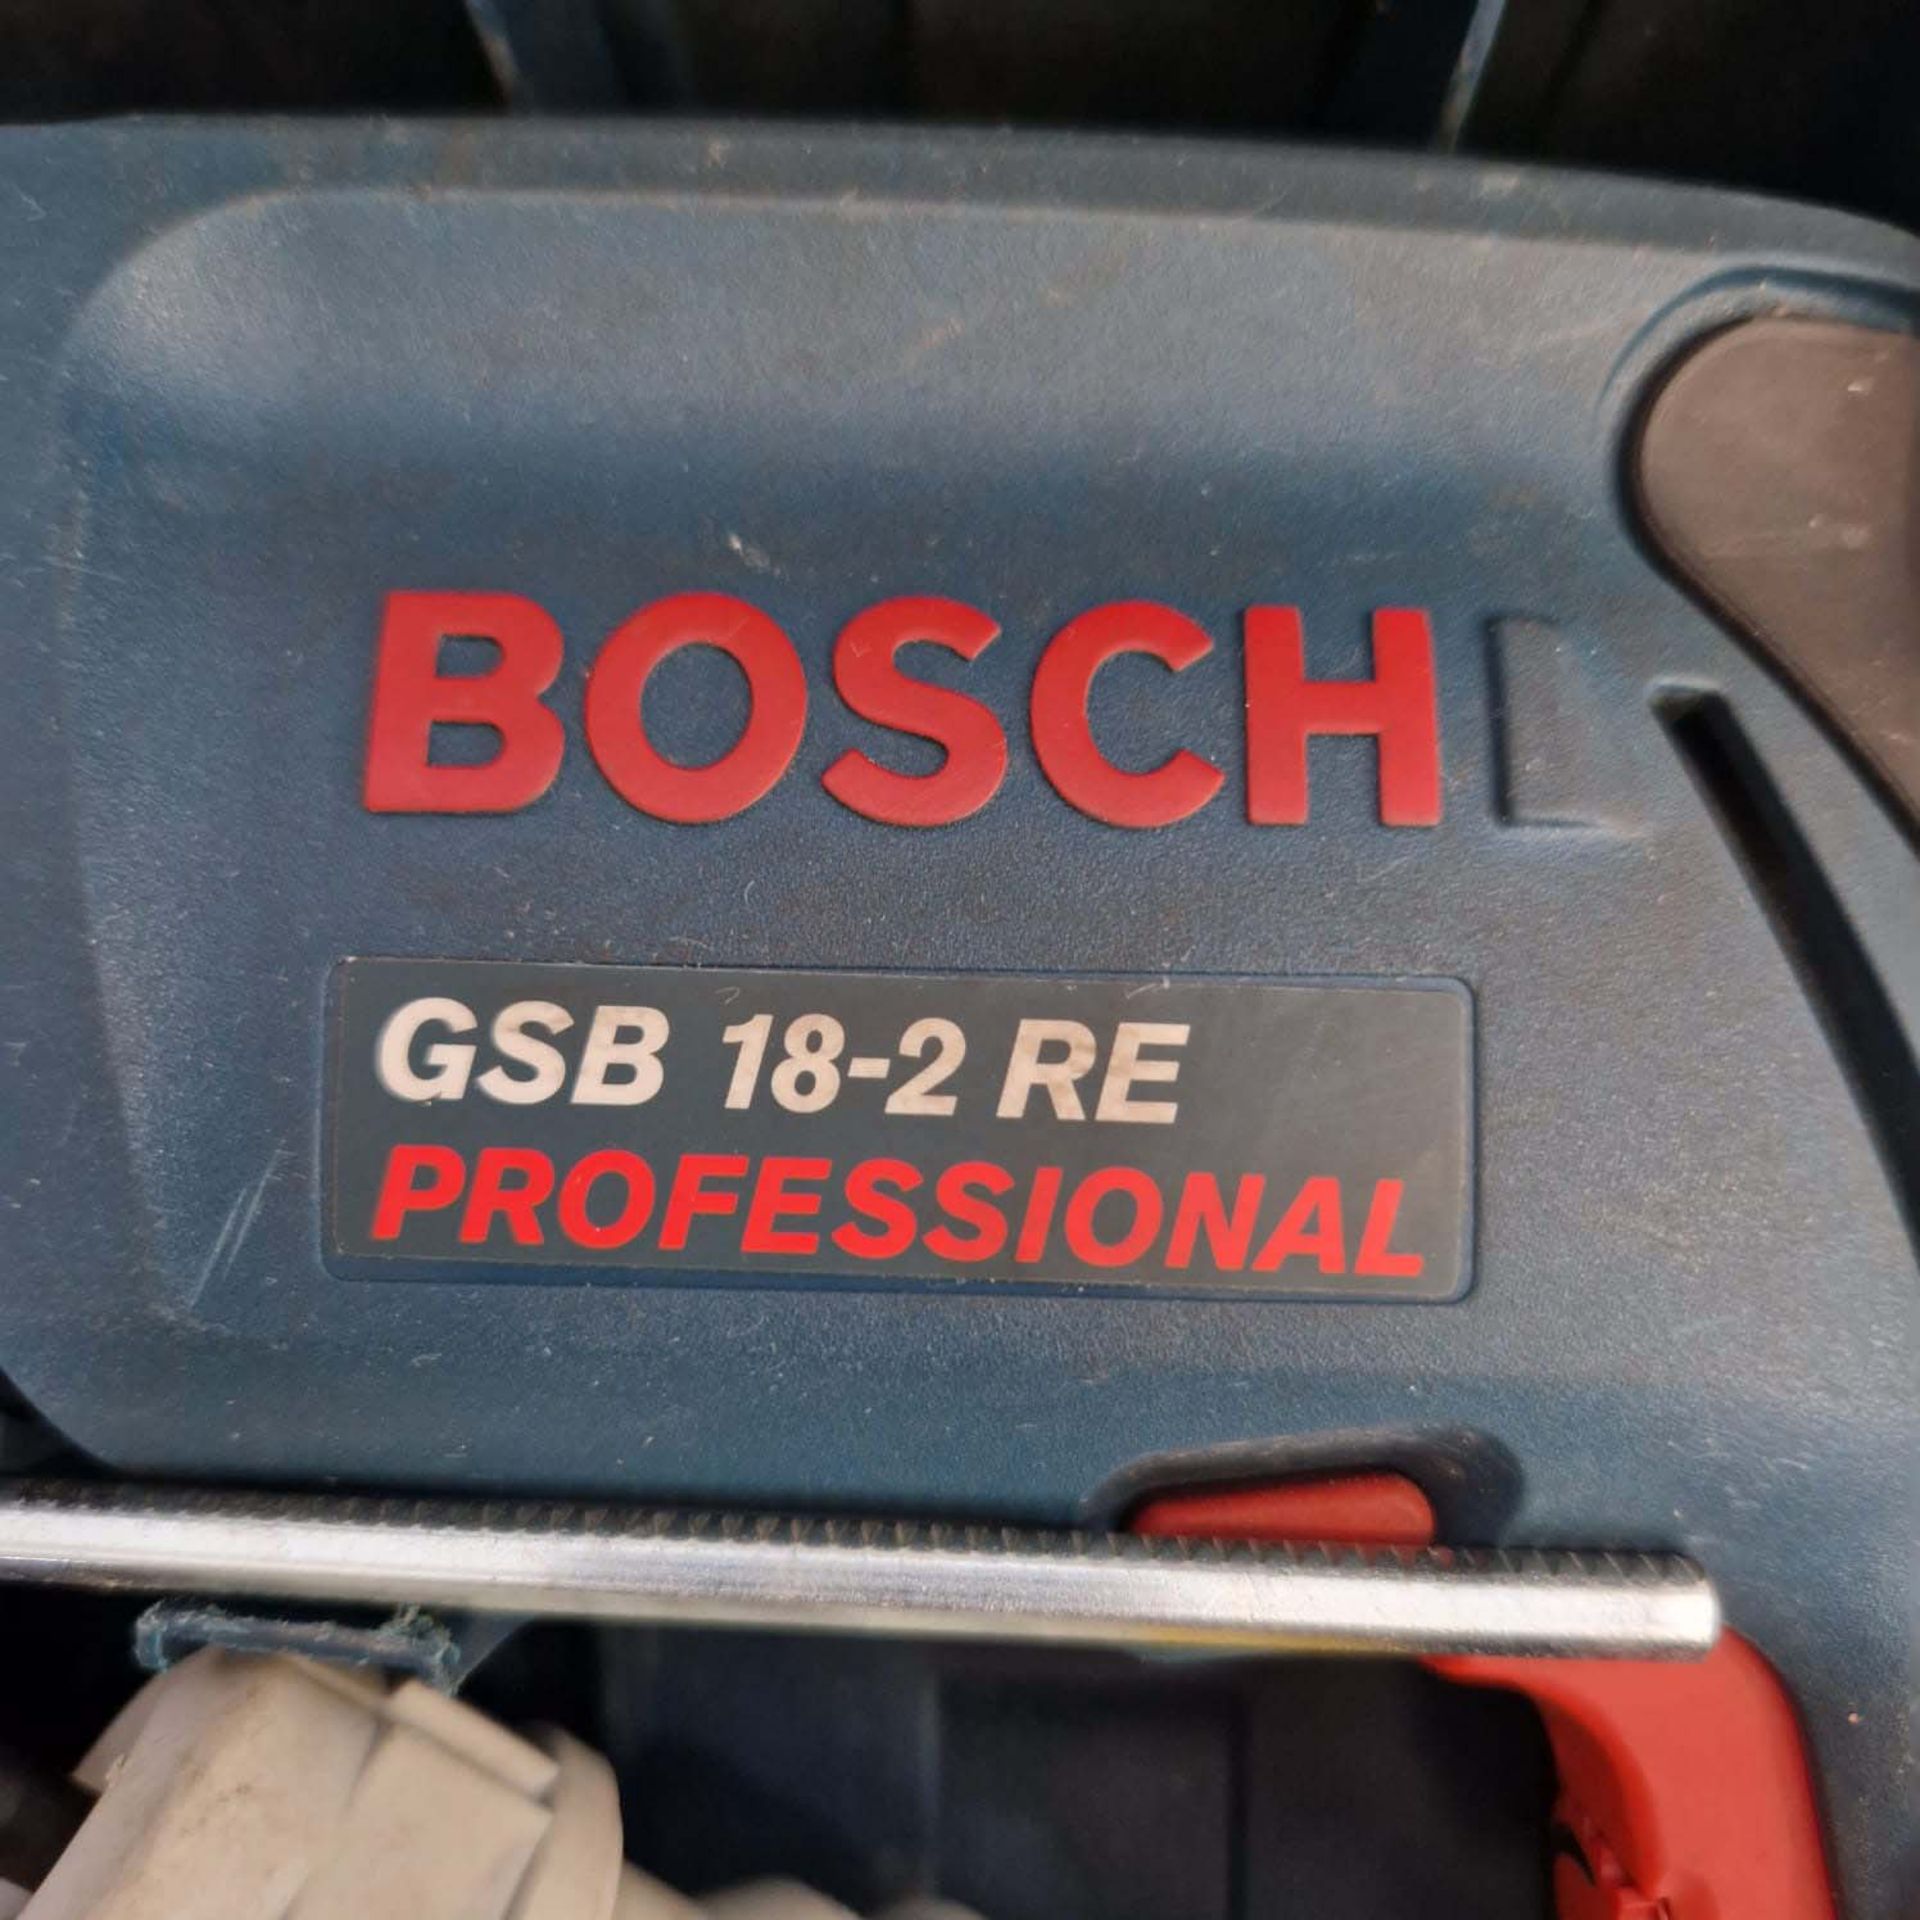 Bosch Professional Hammer Drill 110V Model 6SB 18-2RE. - Image 7 of 9